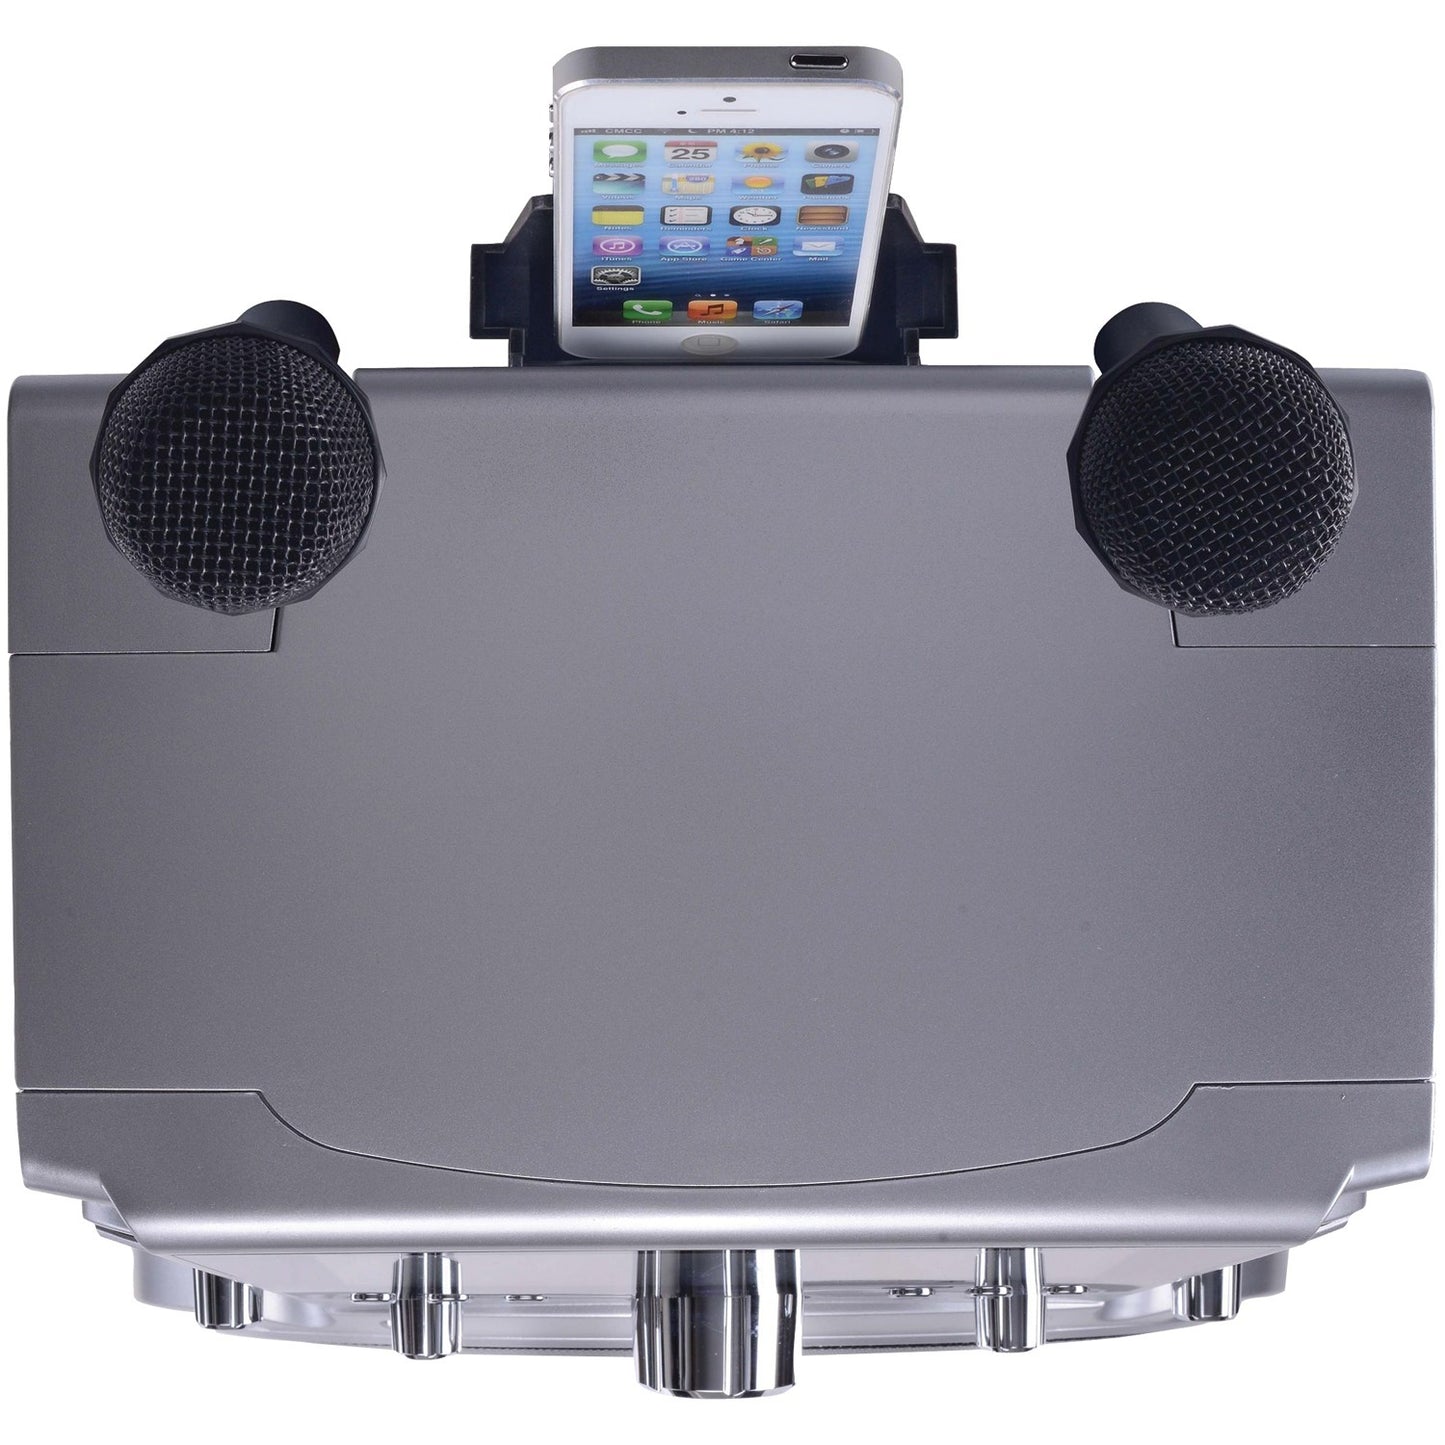 Karaoke USA WK760 All-in-One Multimedia Wi-Fi Karaoke System